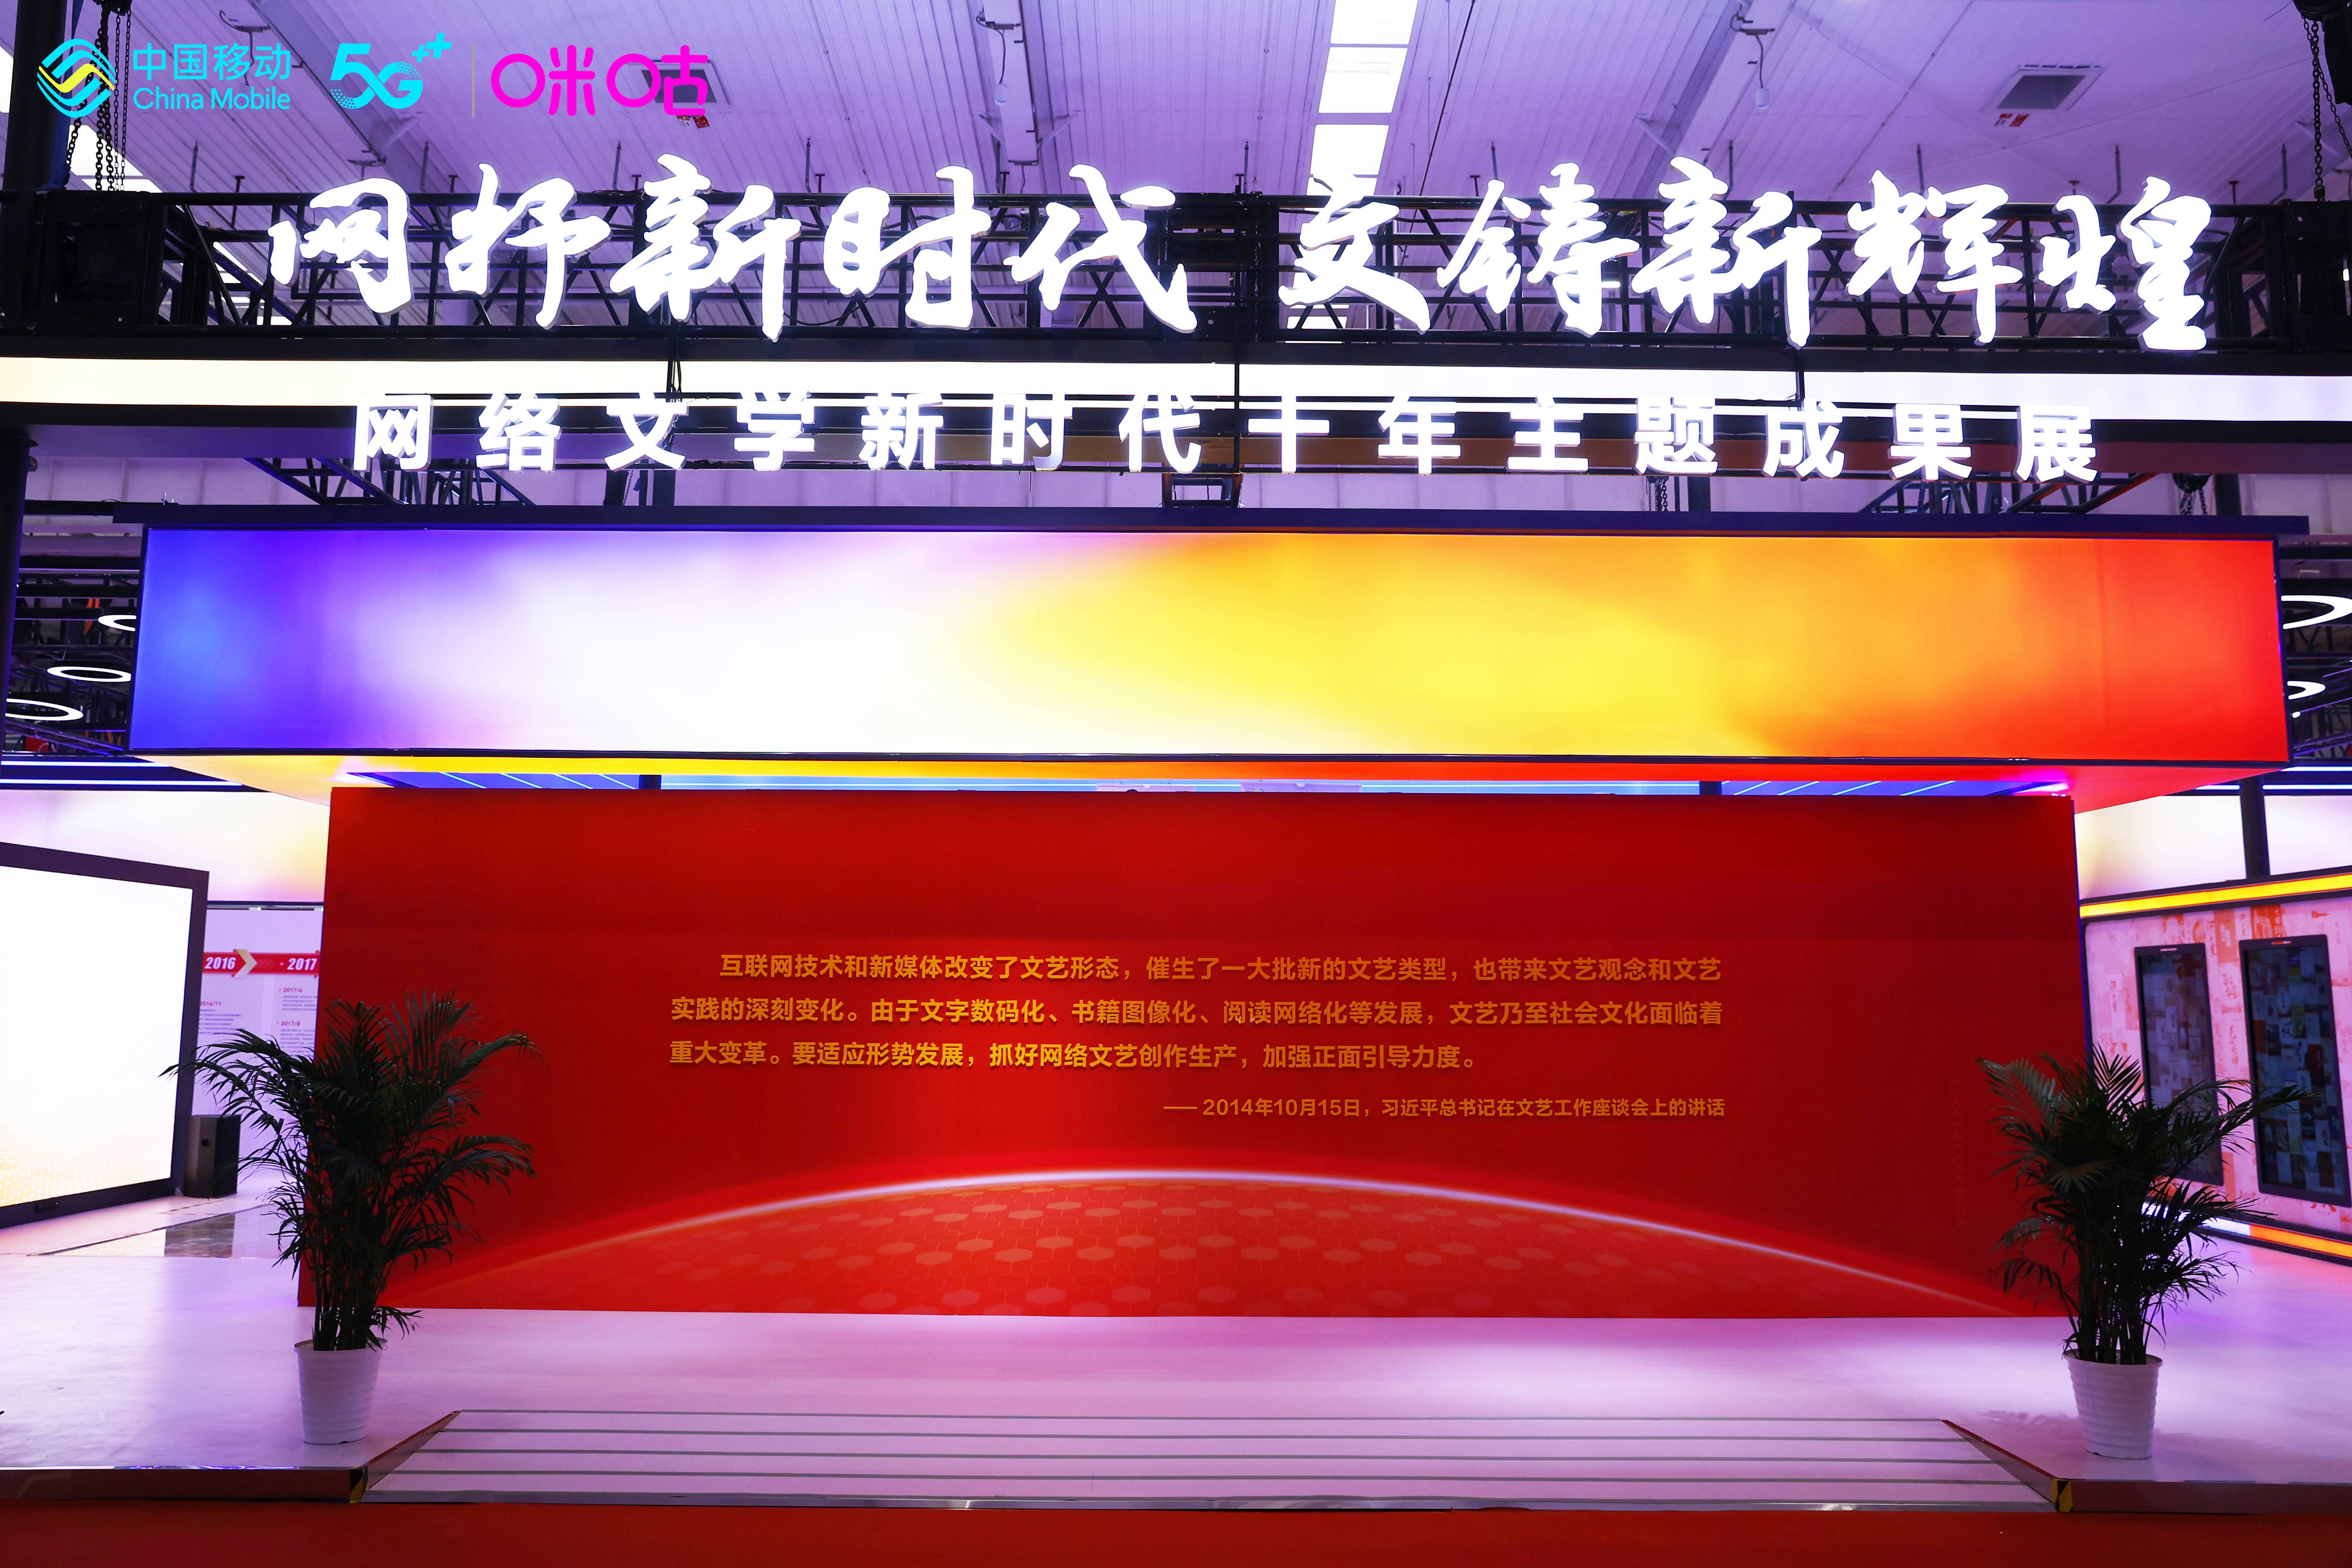 講好中國故事！咪咕亮相第六屆中國“網絡文學+”大會，引領網文創作新風潮